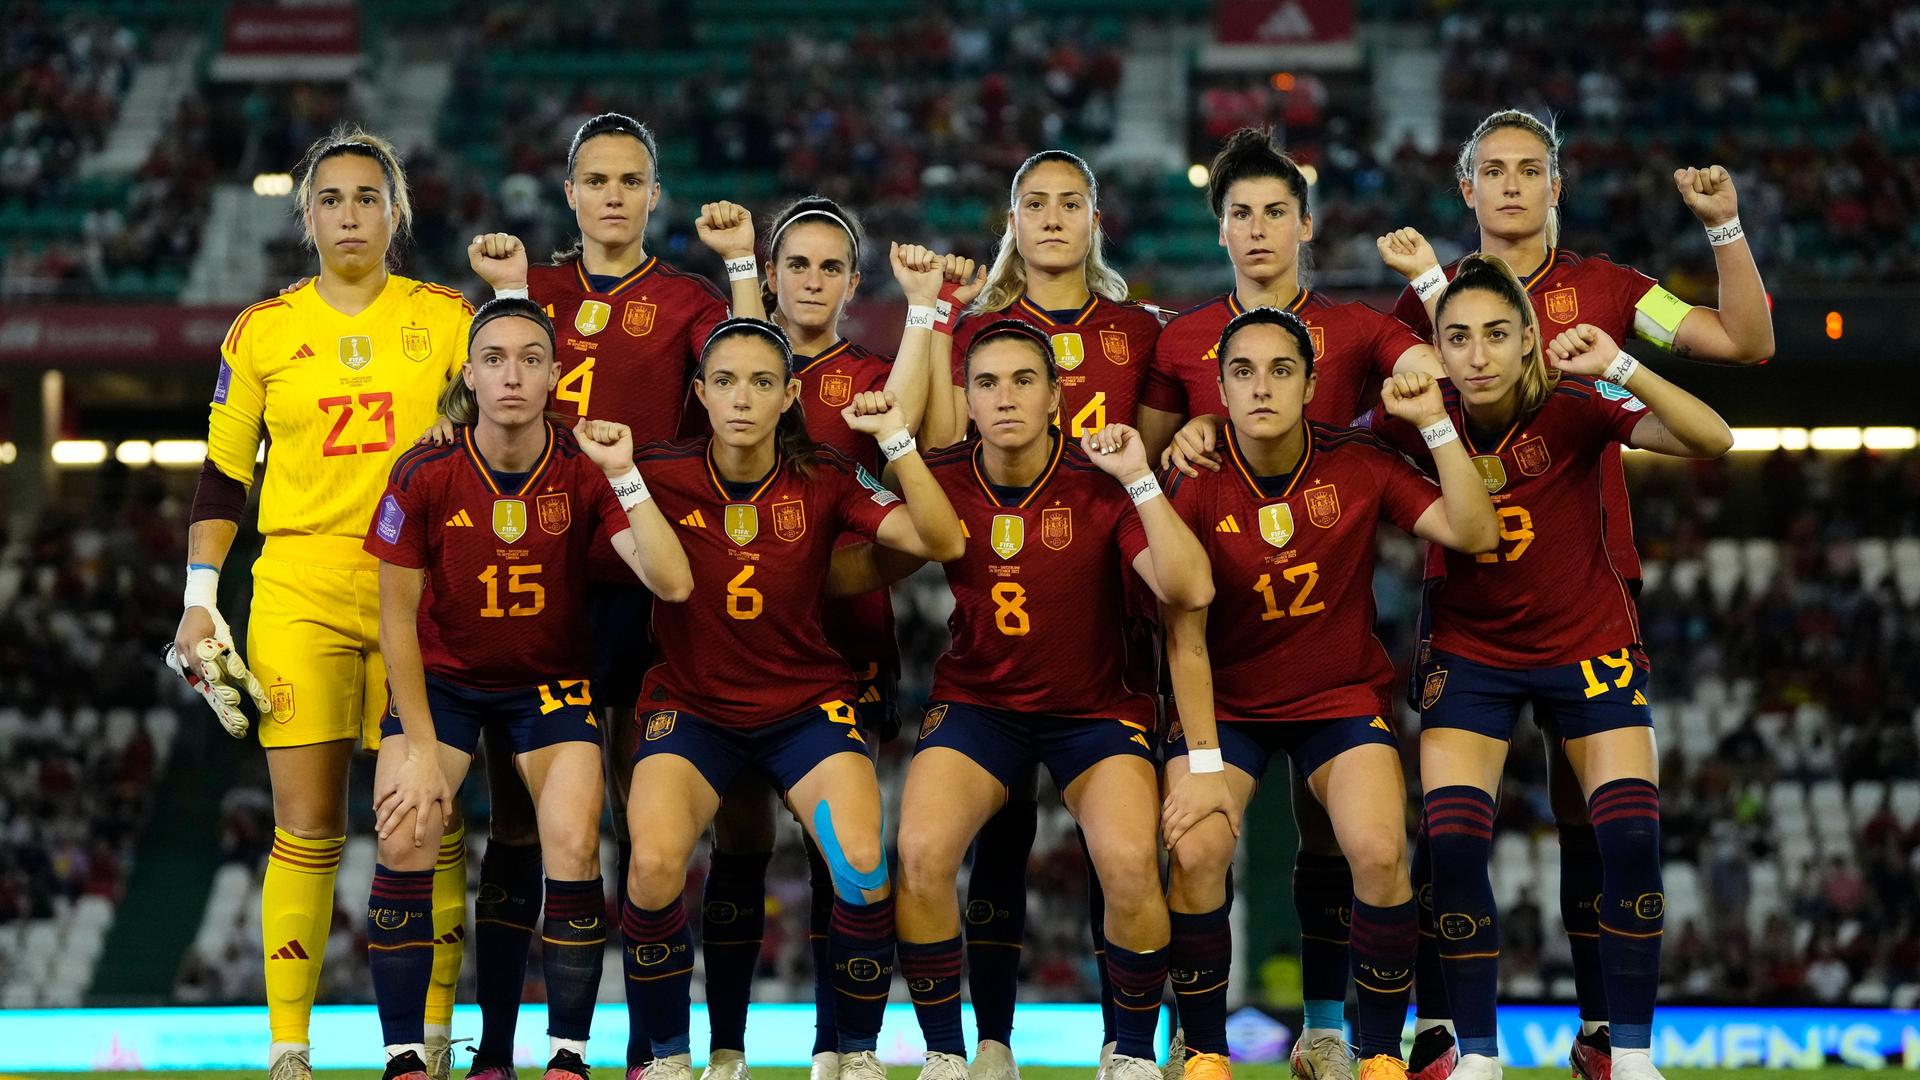 Die spanischen Nationalspielerinnen haben in der Nations League gegen die Schweiz erneut ein Zeichen für ihre Solidarität mit ihrer Mitspielerin Jennifer Hermoso nach dem Kussskandal gesetzt. Die spanischen Spielerinnen trugen die "Se acabo"-Botschaft zudem am Handgelenk.